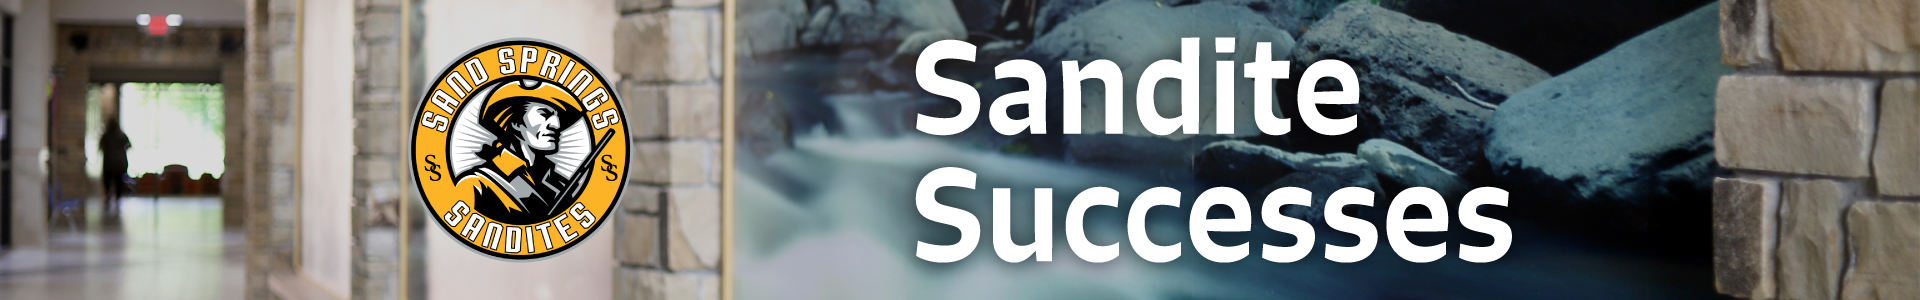 Sandite Successes